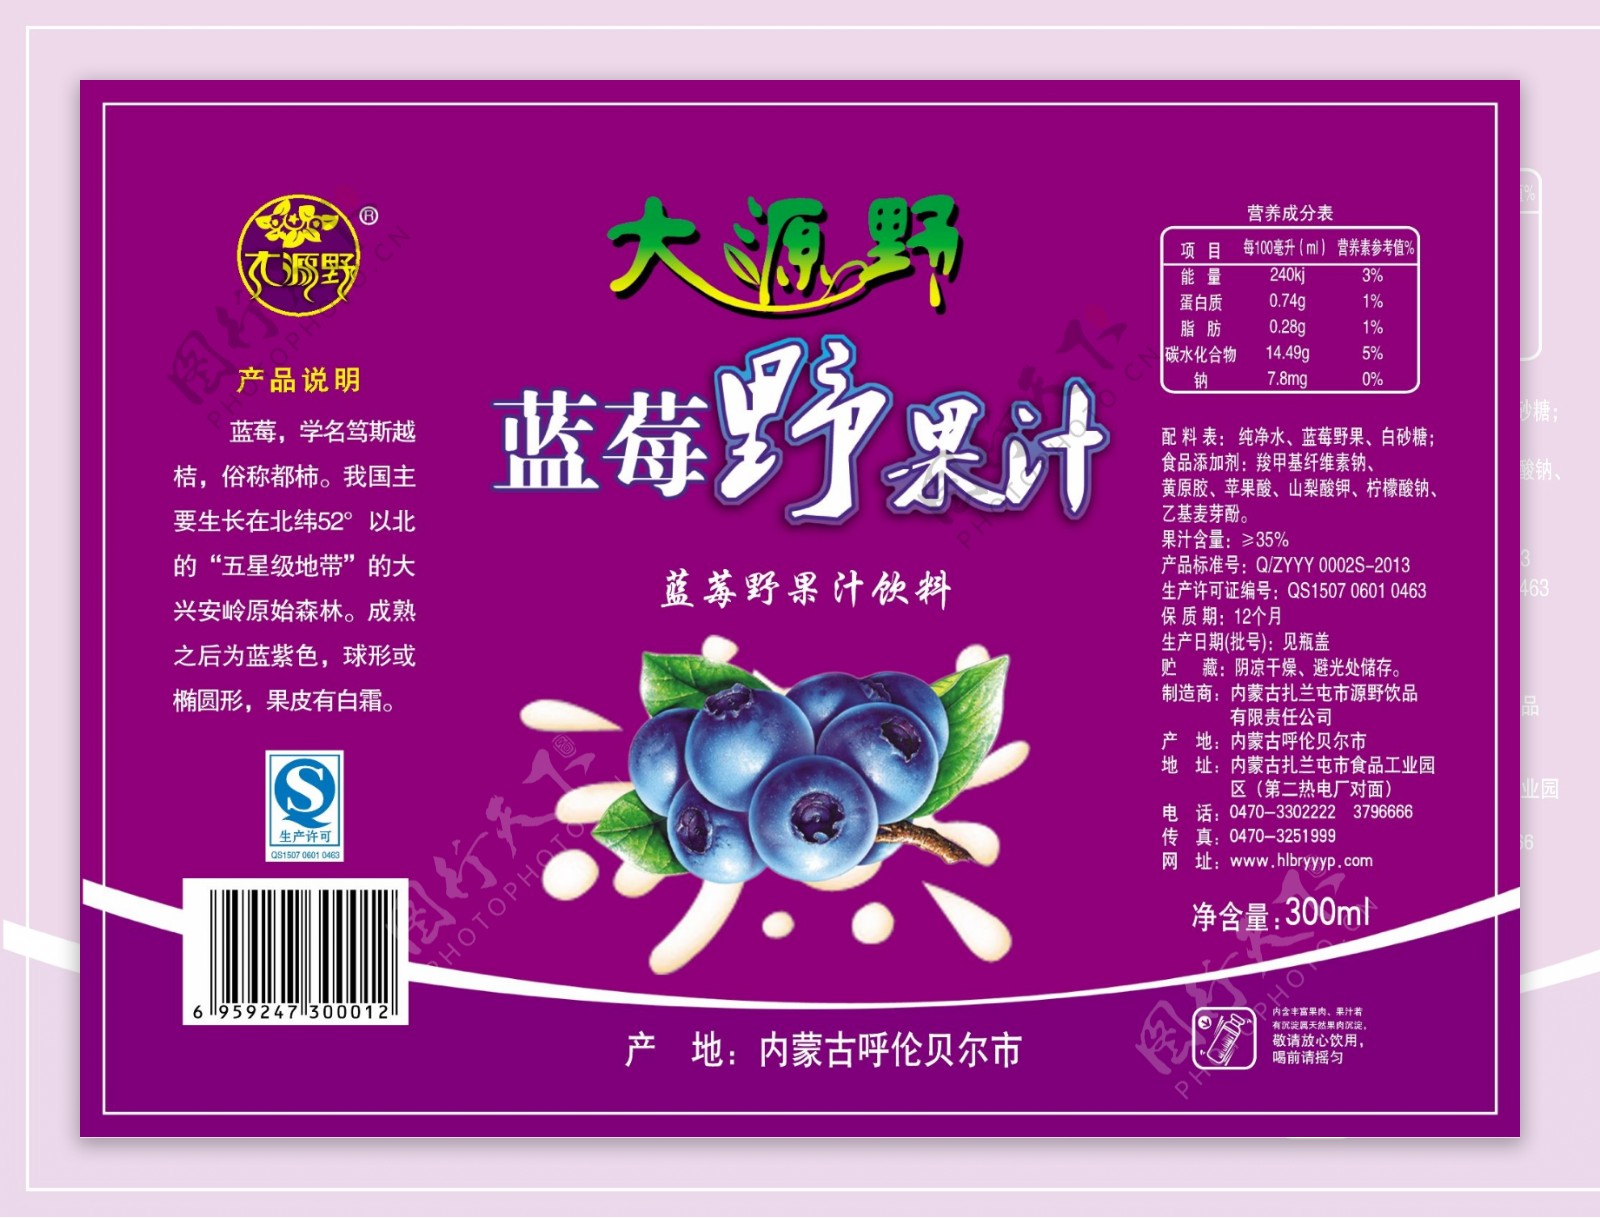 蓝莓野果汁饮料瓶贴图片